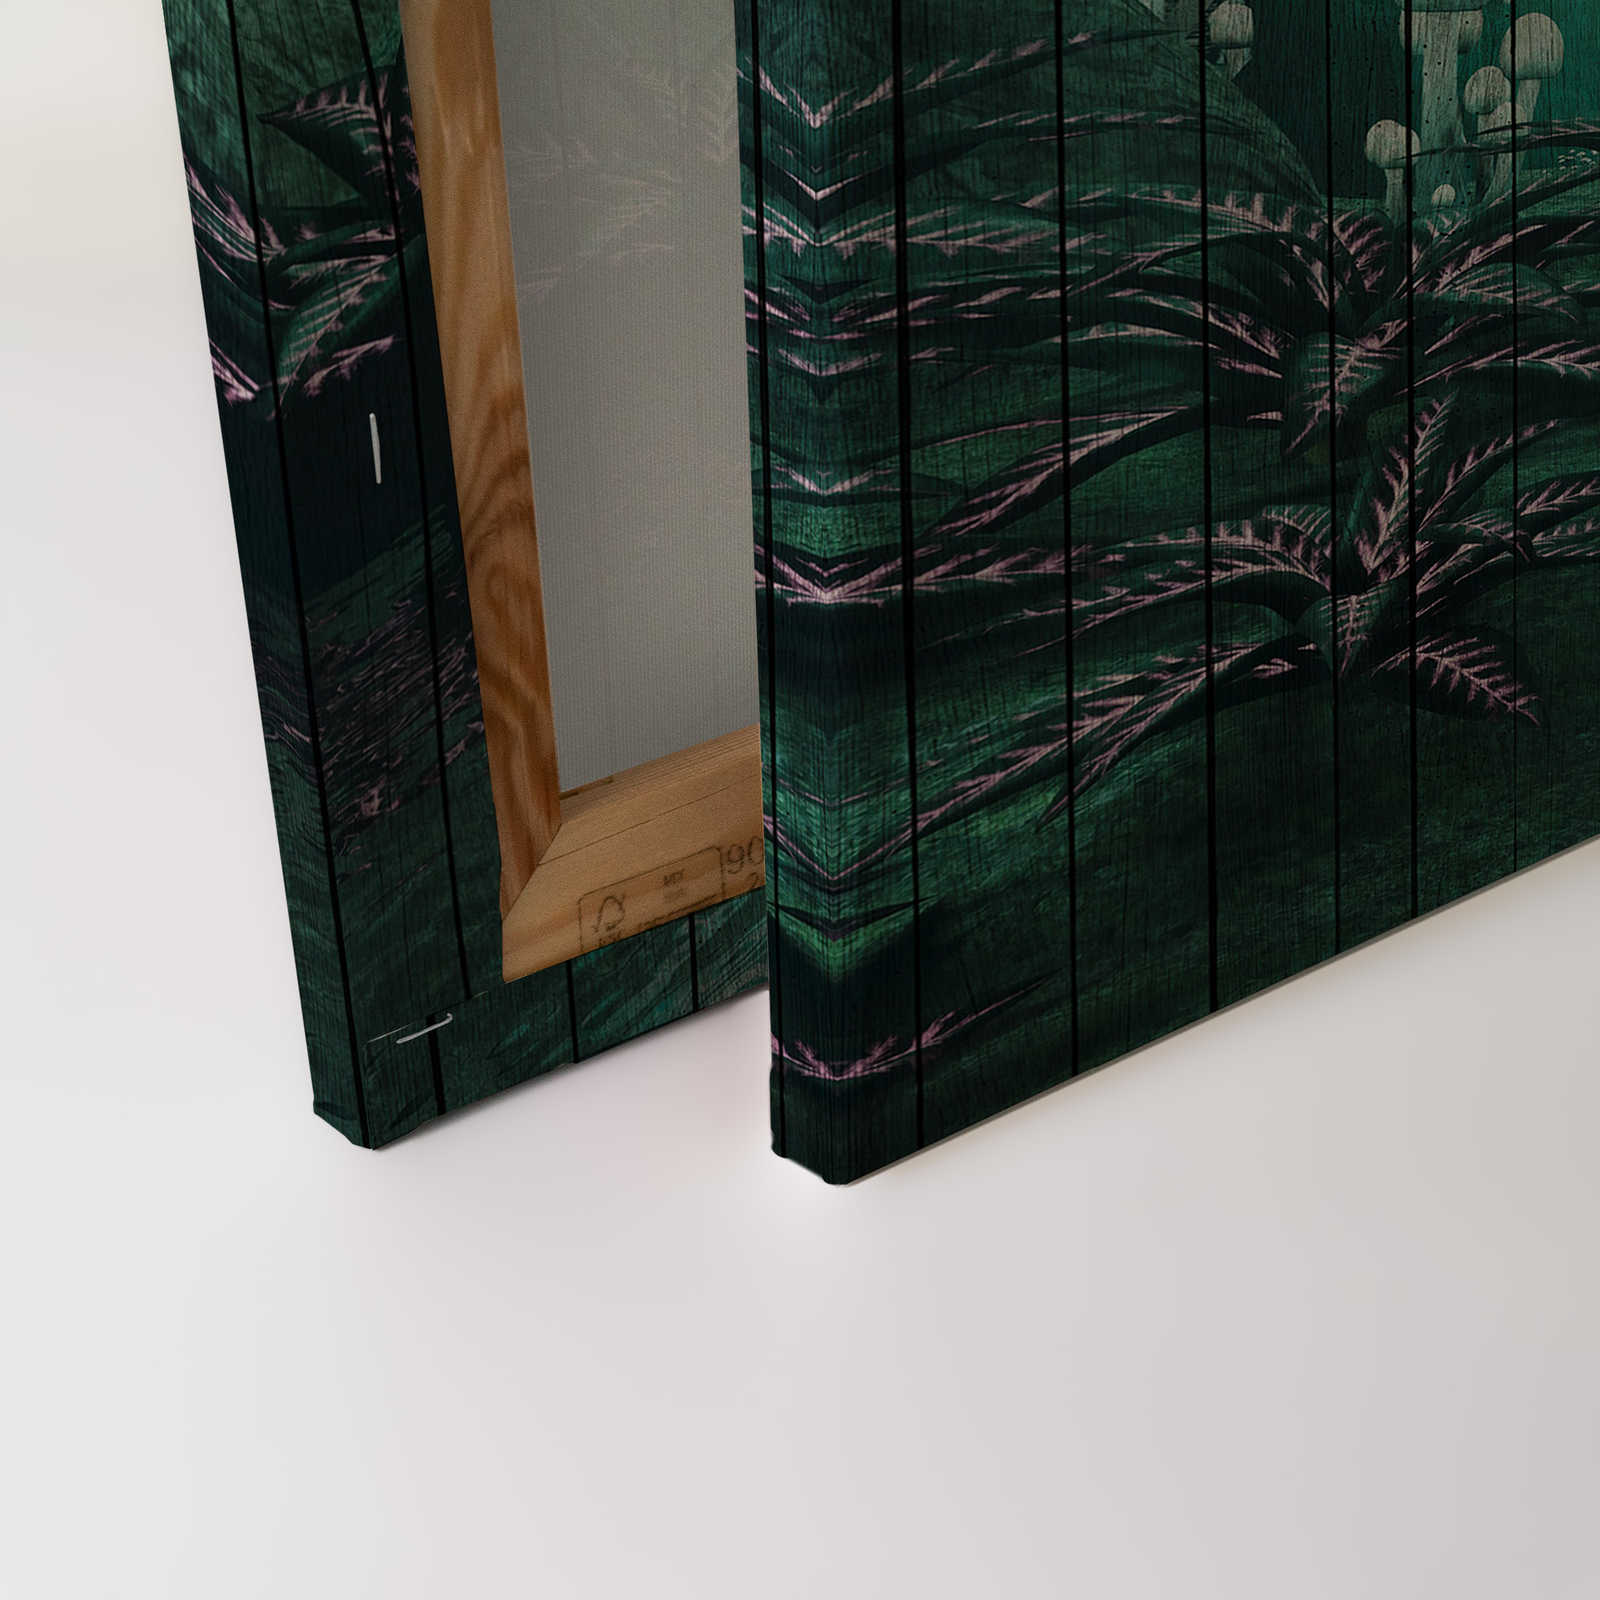             Fantasie 1 - Canvas schilderij Betoverd bos met houtlook - 0,90 m x 0,60 m
        